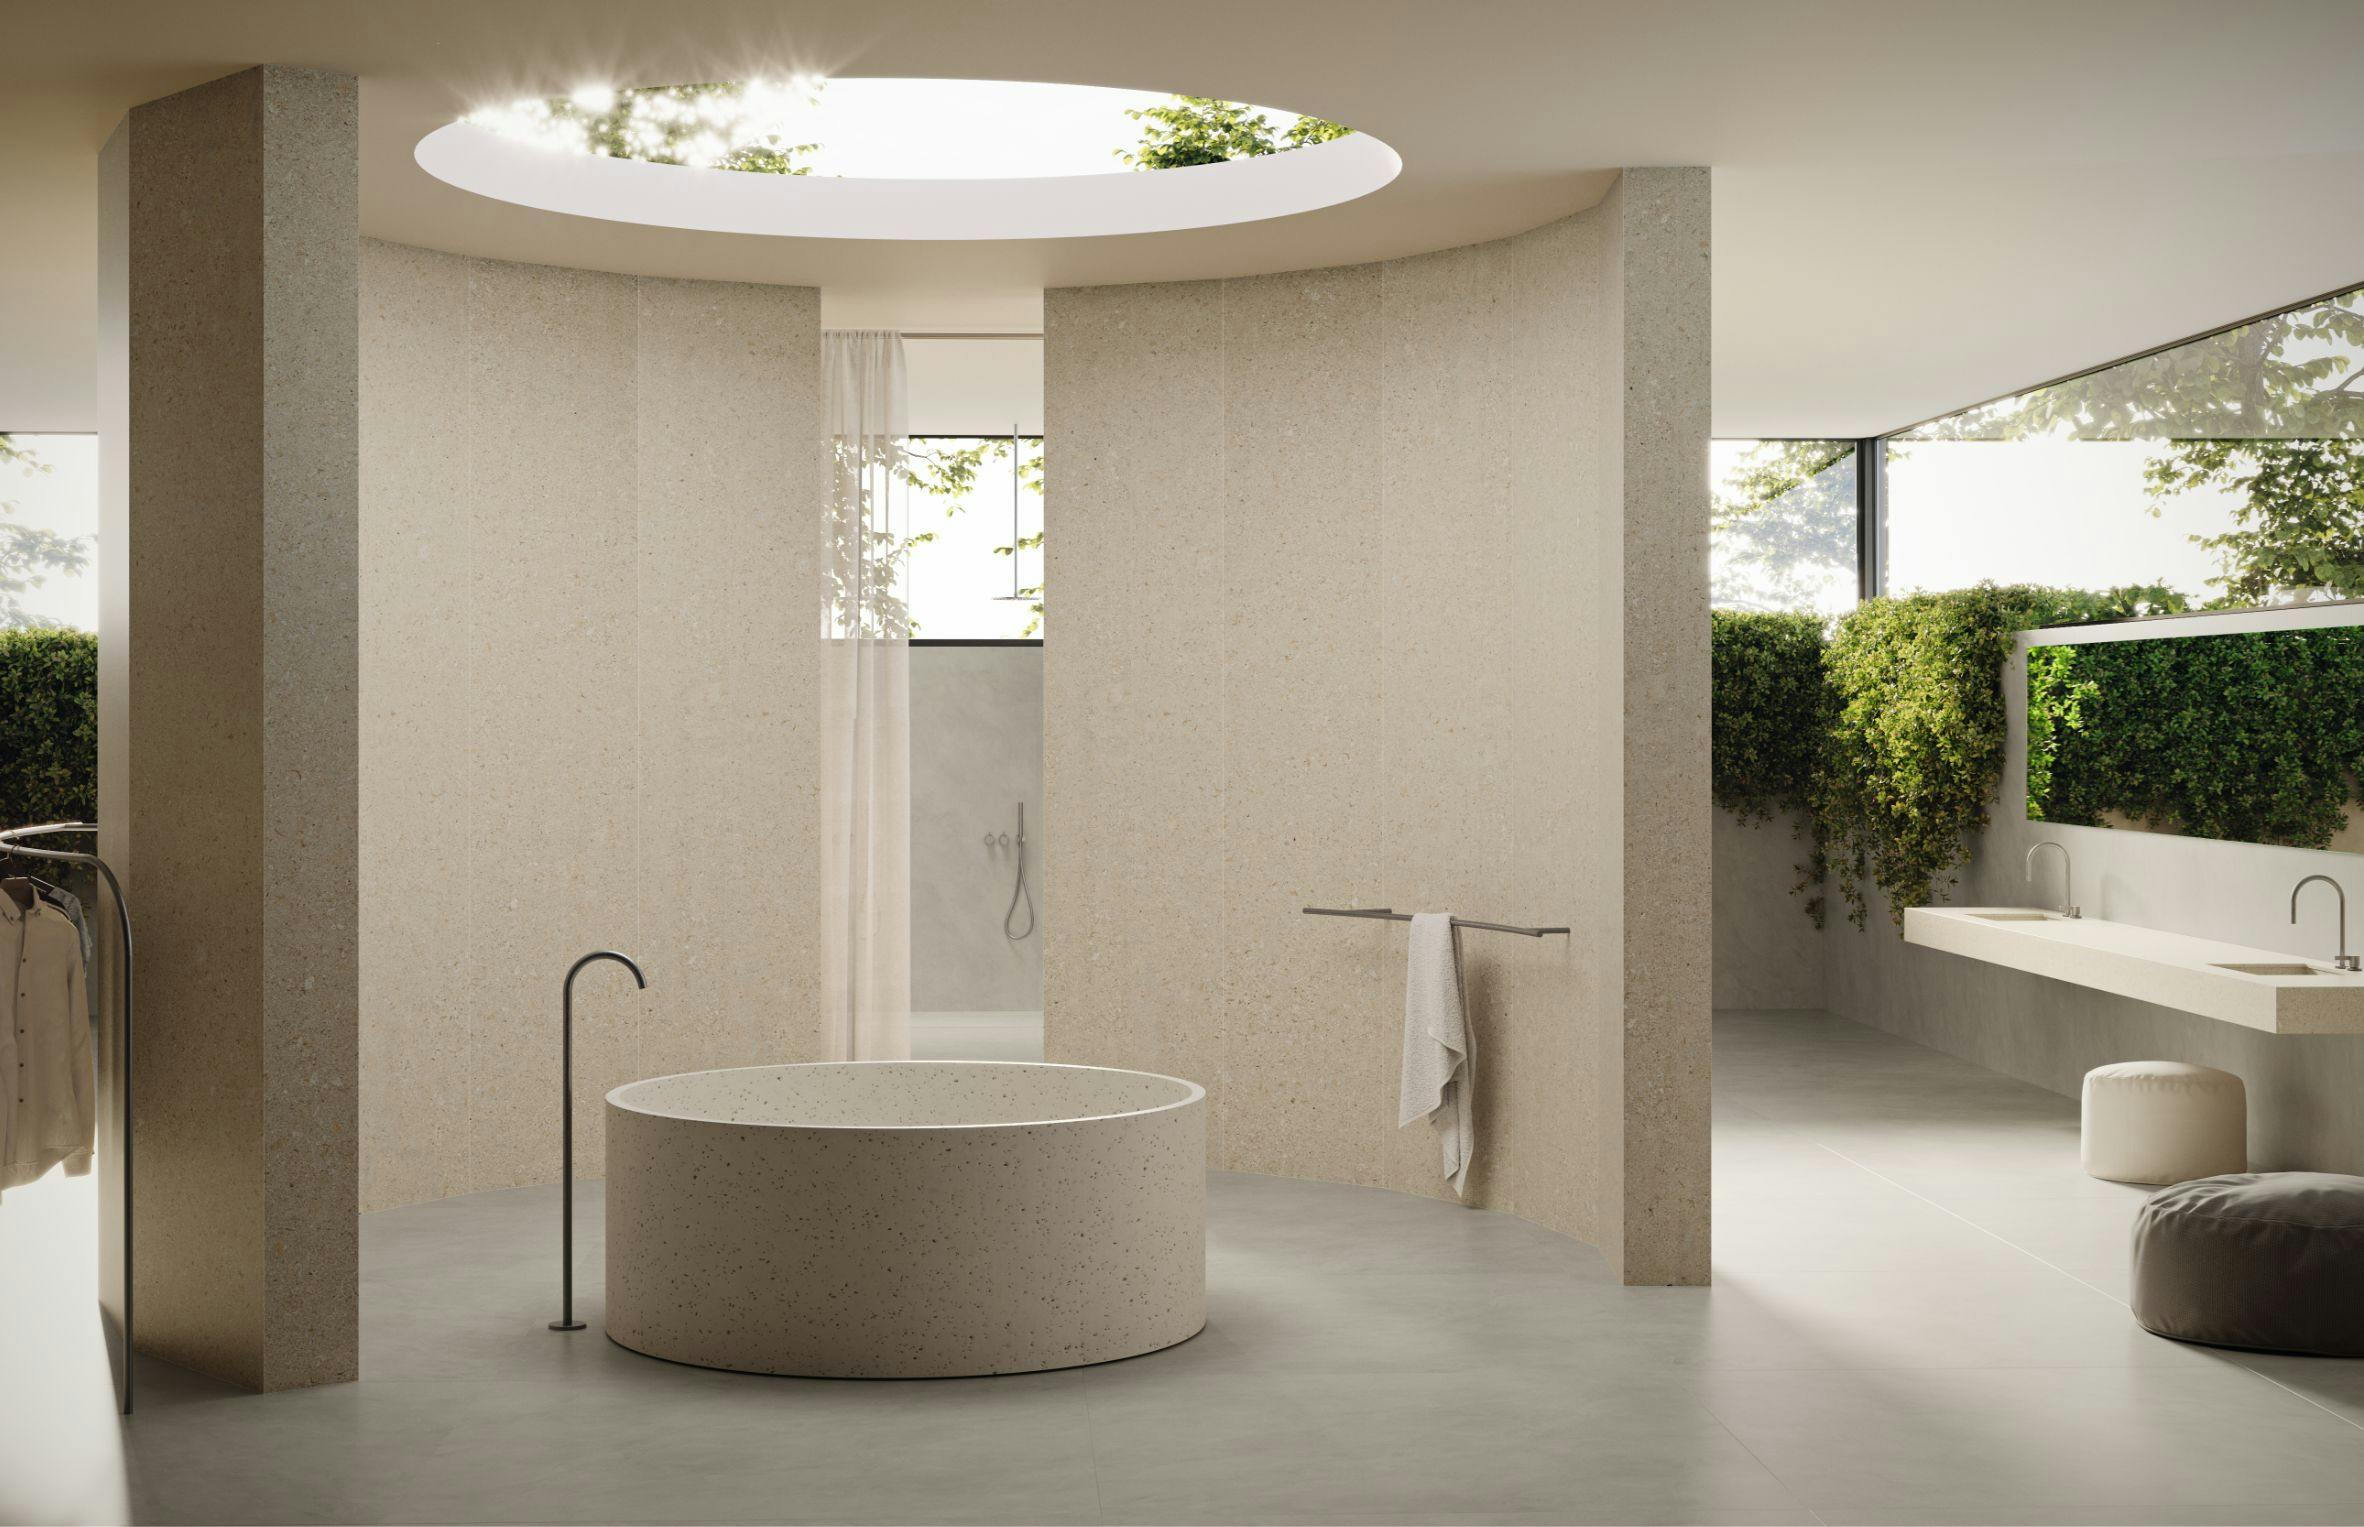 Numero immagine 33 della sezione corrente di Travertino: the bathroom by Daniel Germani that brings the water rituals up to date di Cosentino Italia